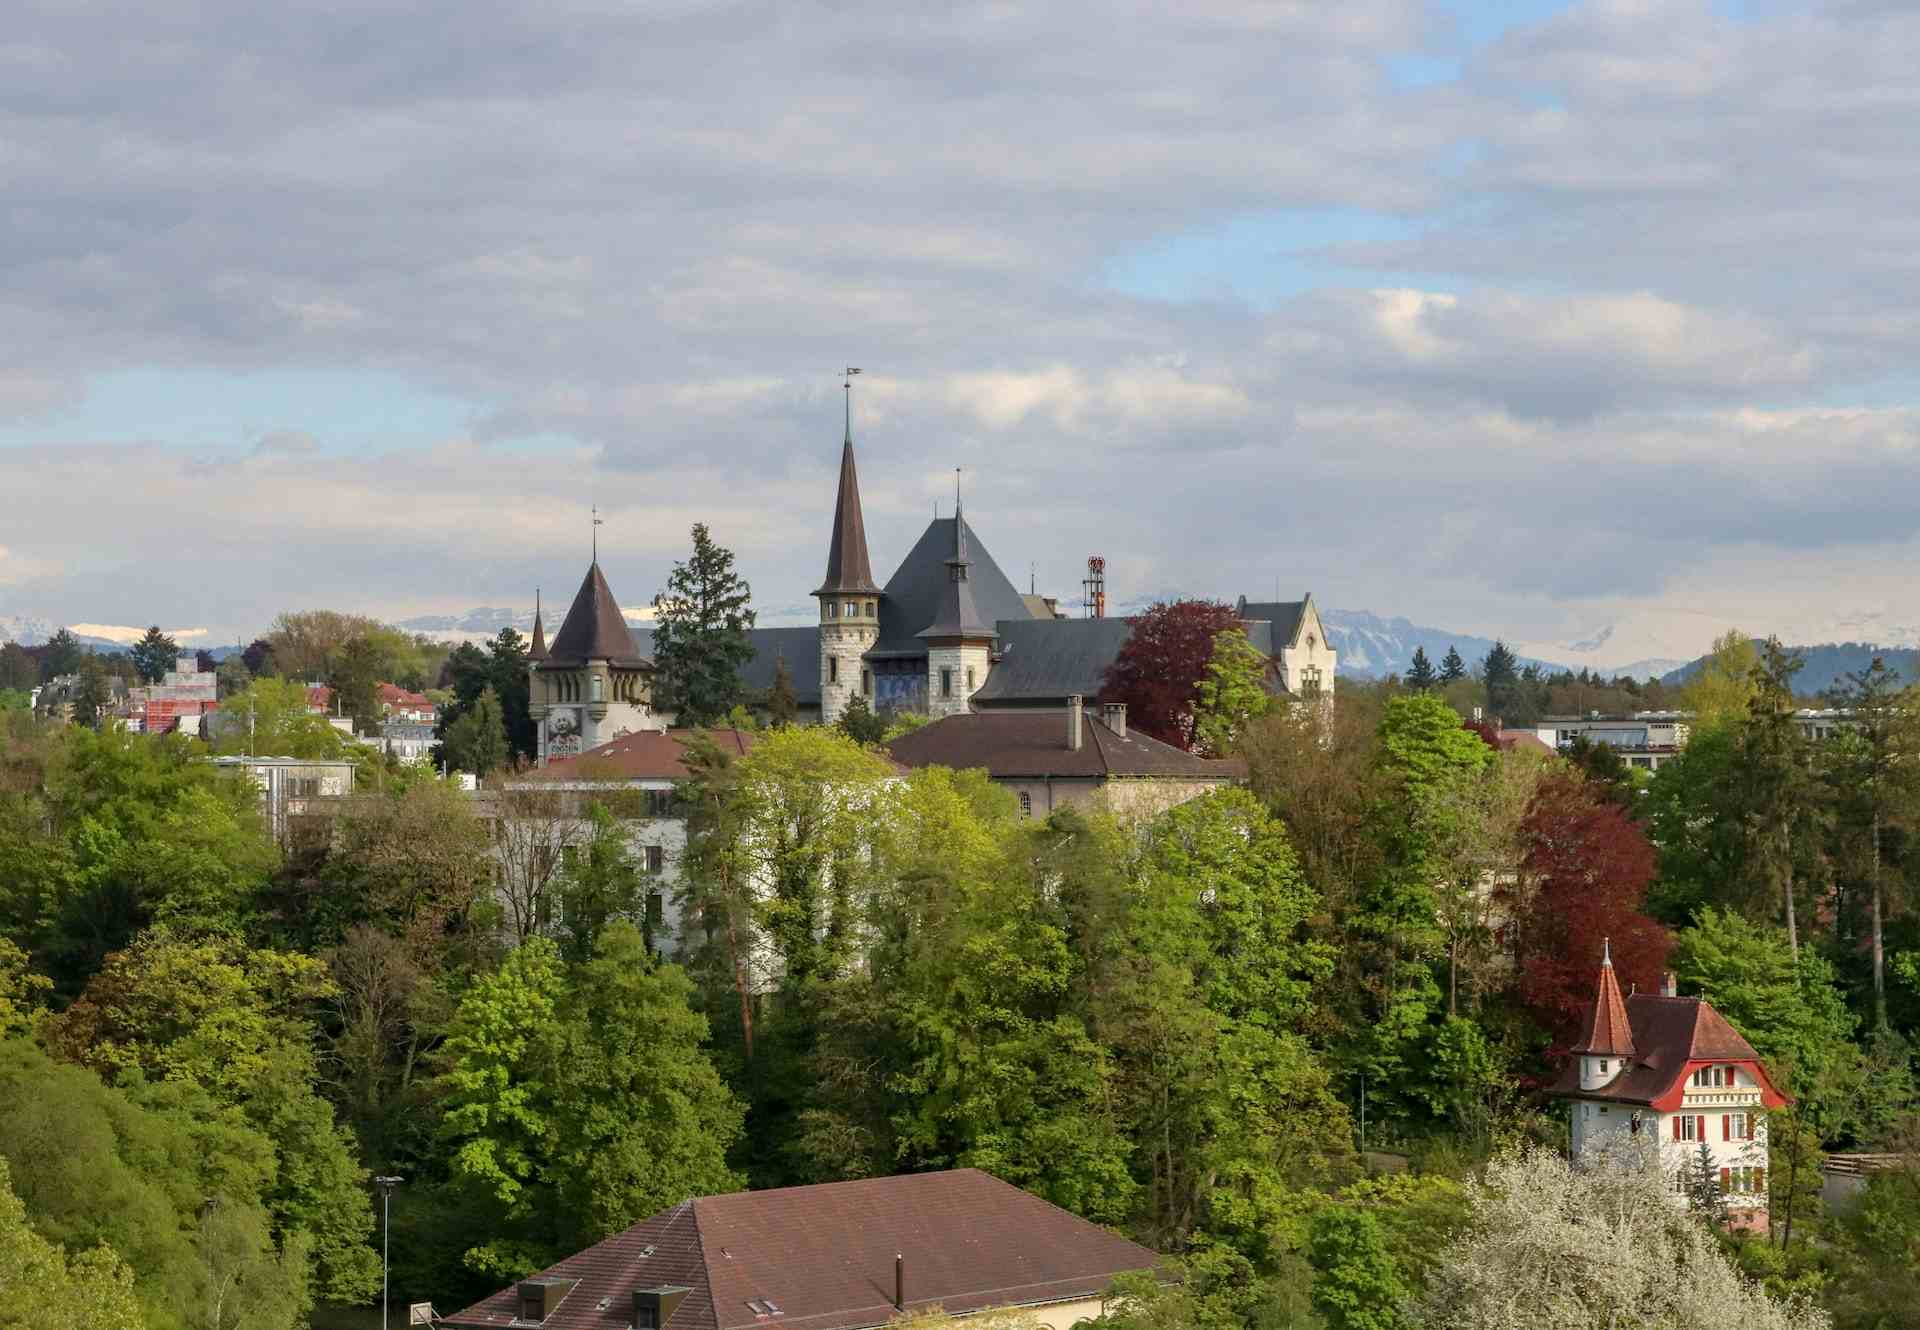 Däpp`s Hubeli Hof, producteur à Aeschiried canton de Berne en Suisse